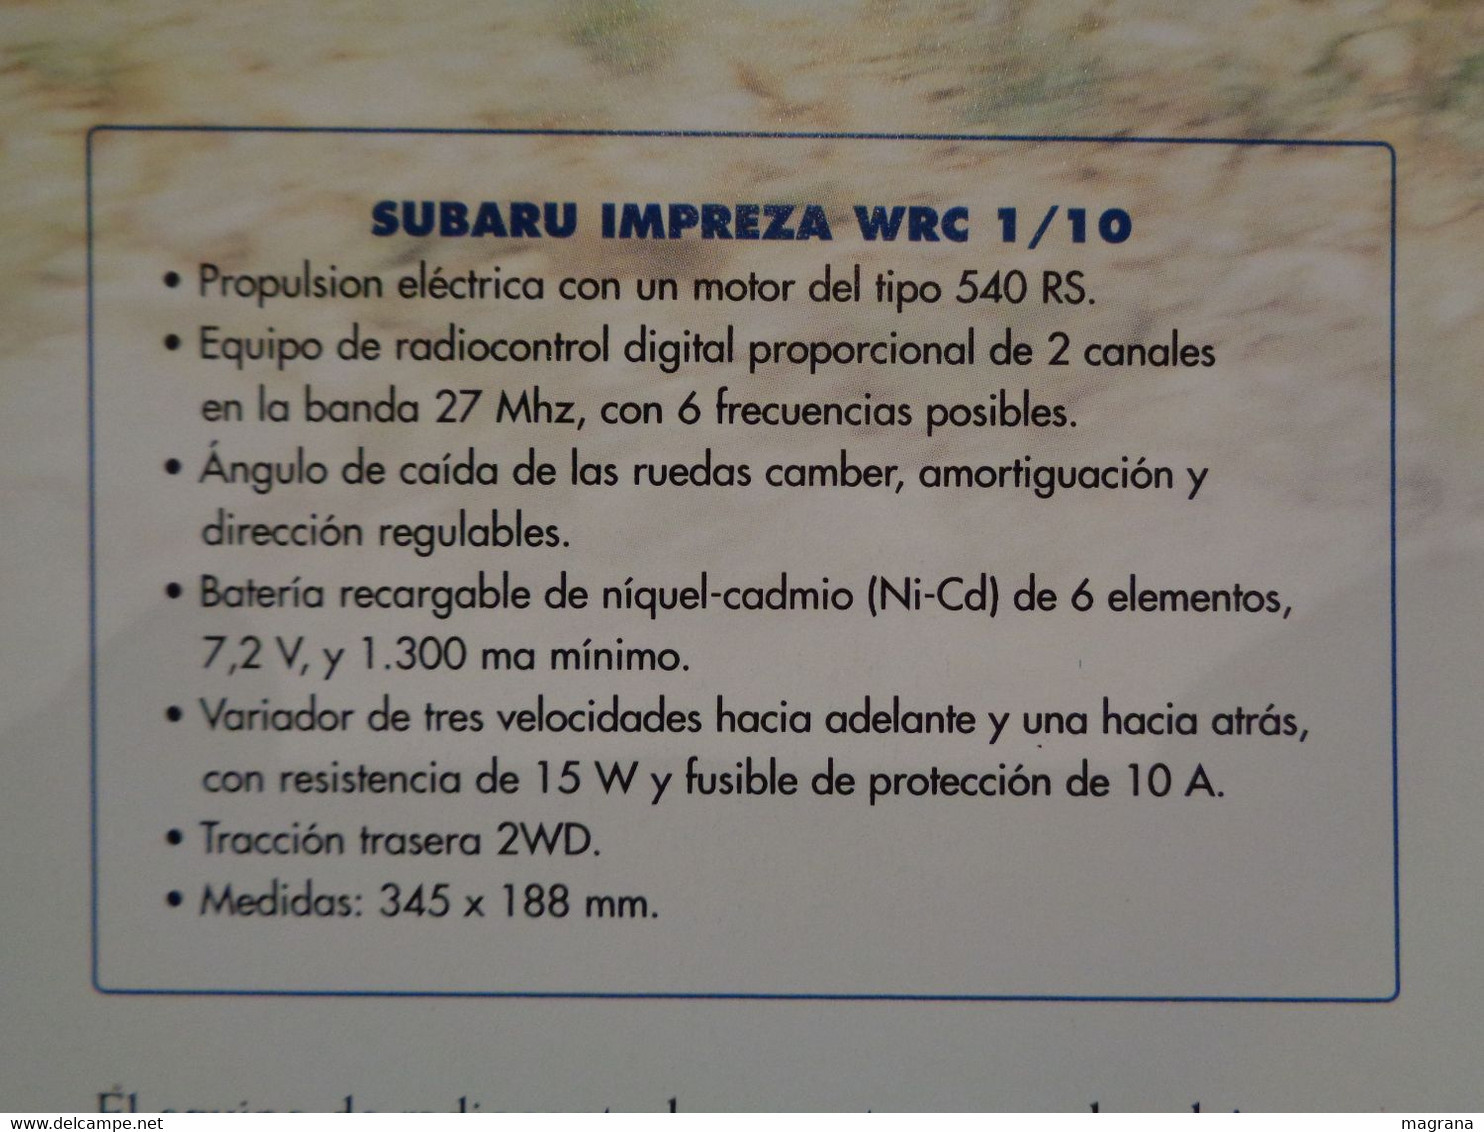 Radiocontrol Altaya. Coche Subaru Impreza WRC. Escala 1/10. Año 2002. Coleccionable Completo. - R/C Modelbouw